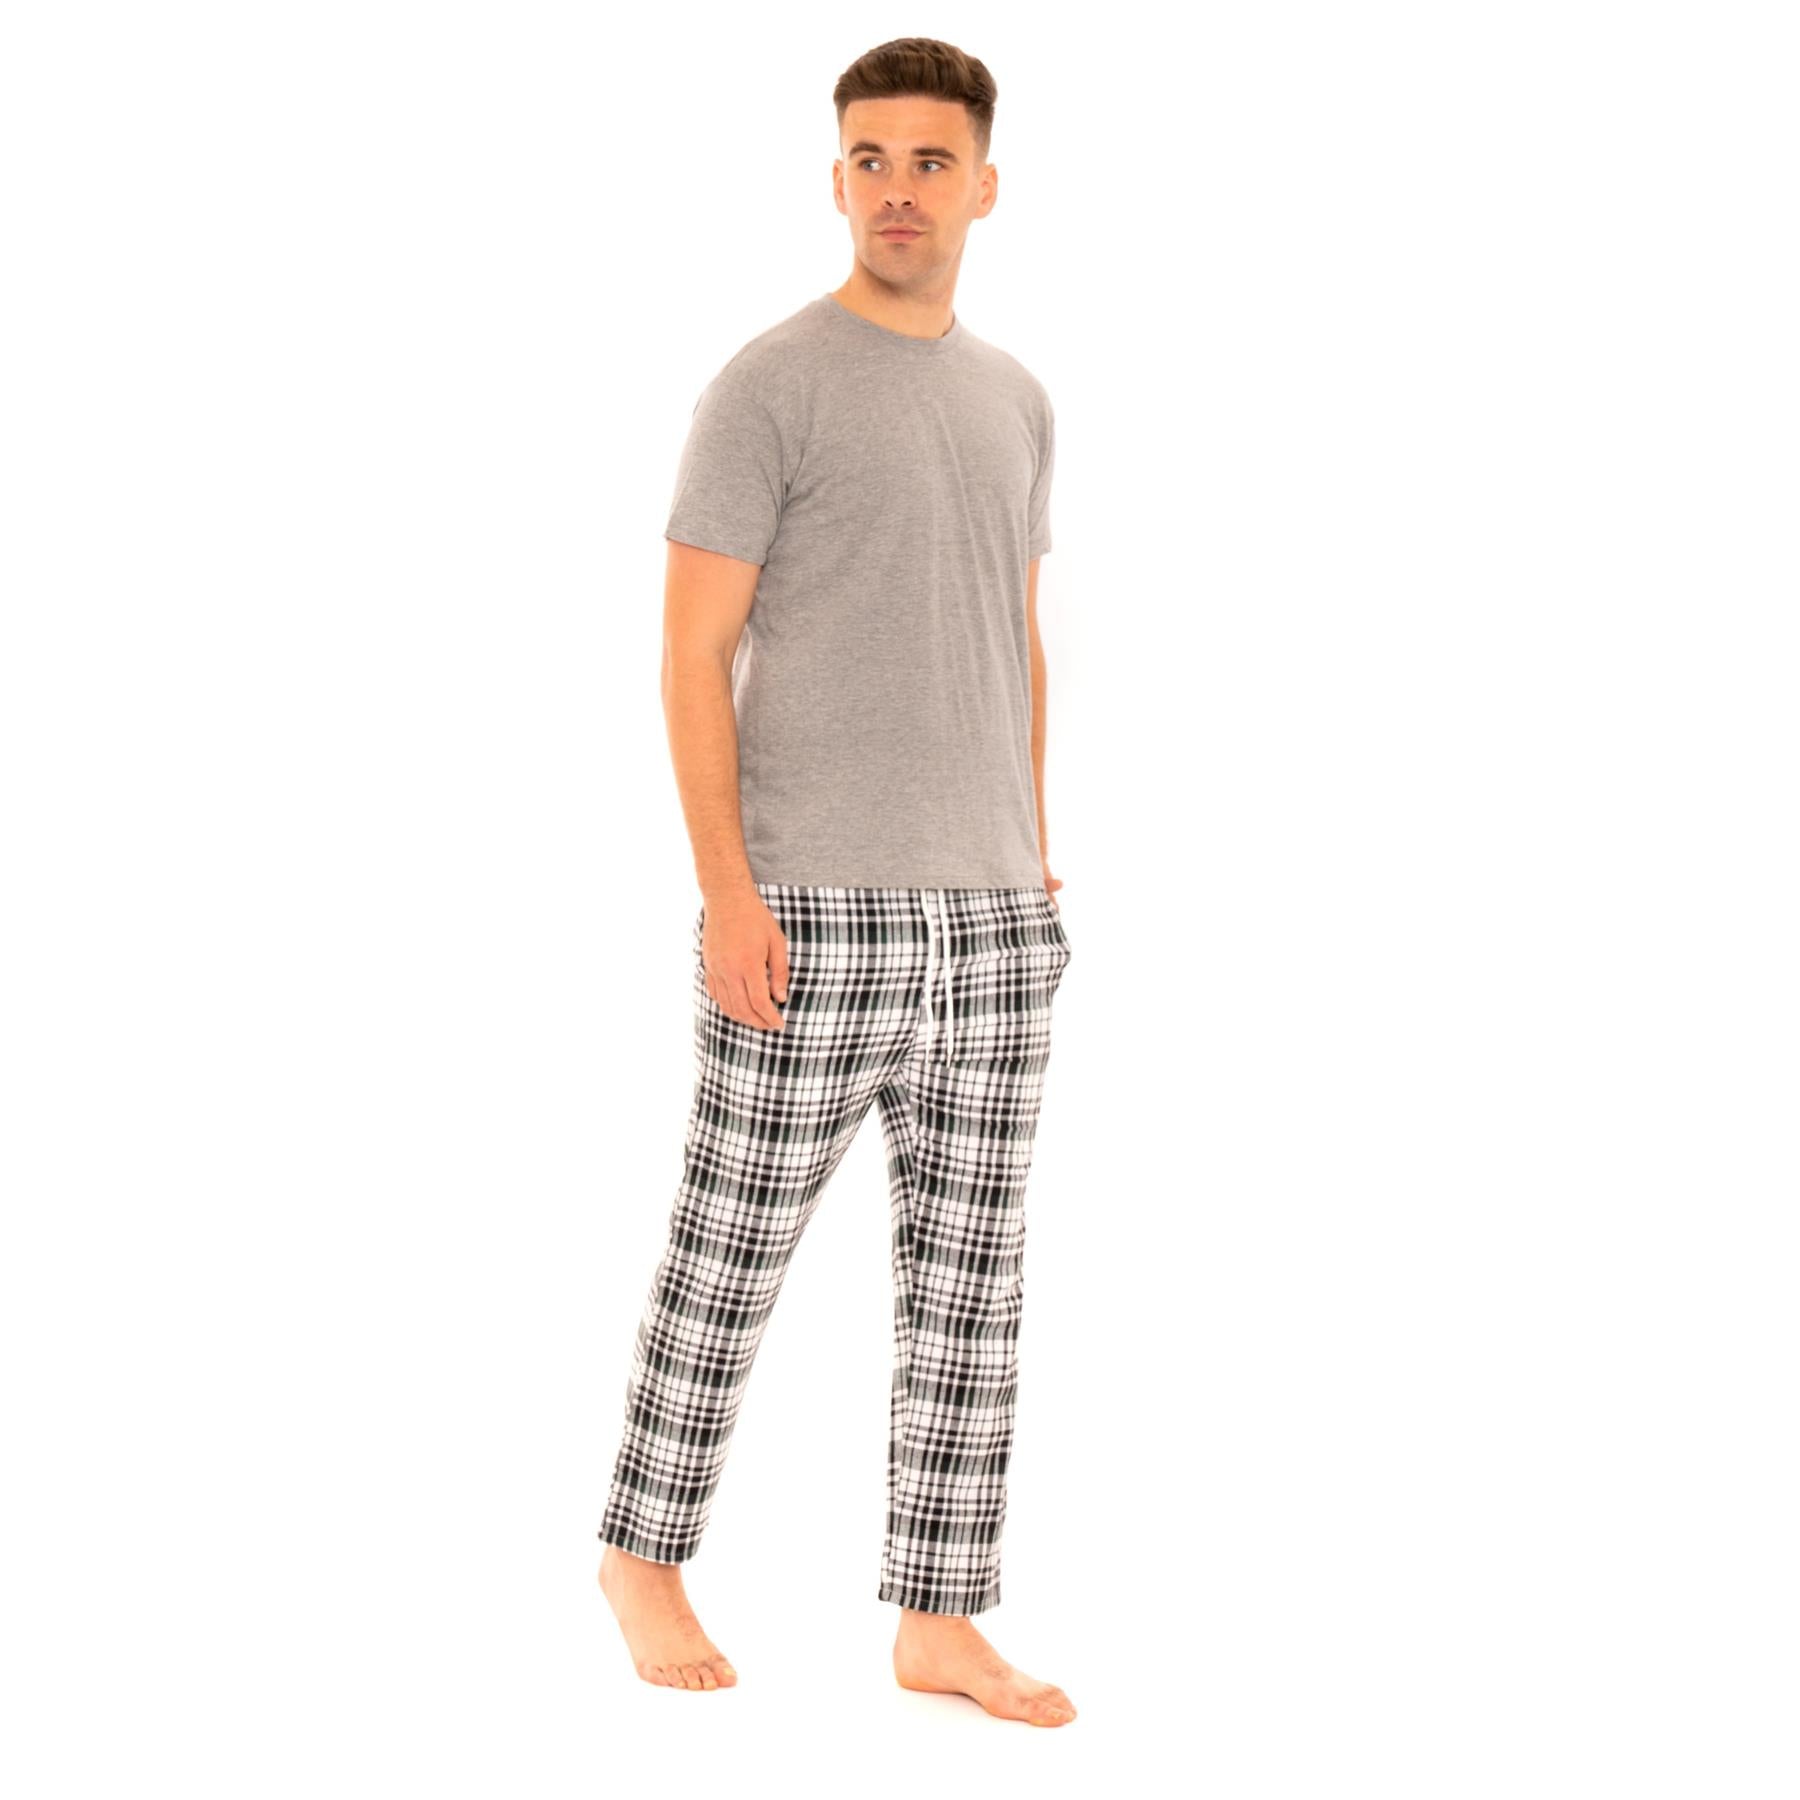 Woven Checked Pants Pyjamas